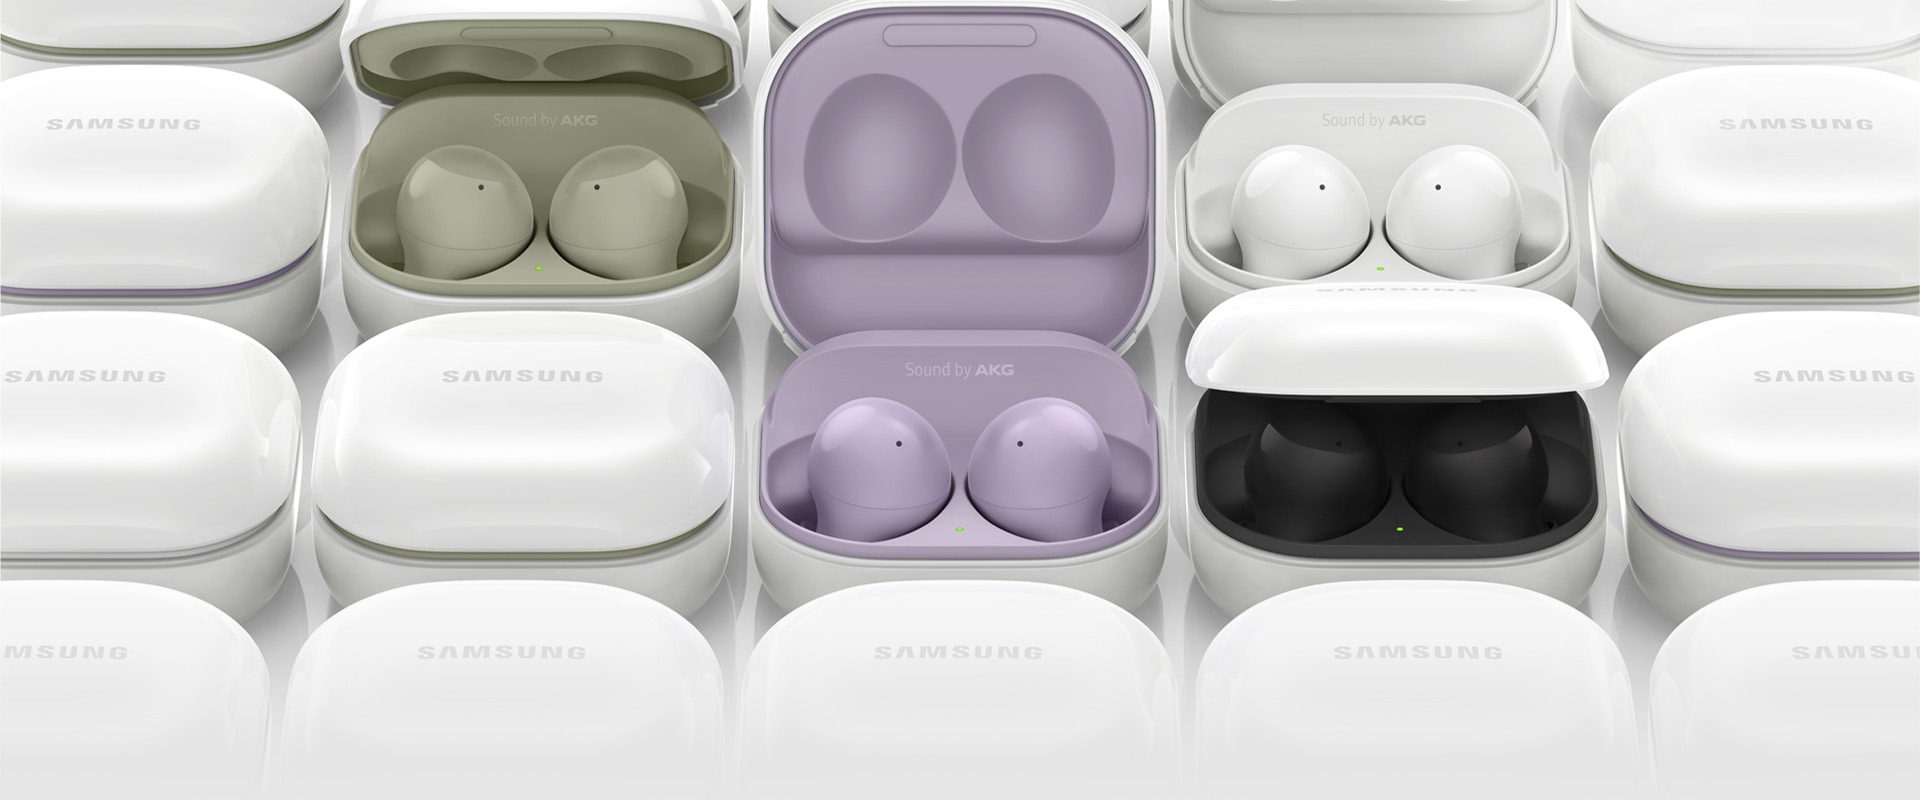 Các hộp sạc Galaxy Buds2 đặt cạnh nhau. Một số hộp được mở ra, mặt bên trong mỗi hộp có một màu khác nhau, gồm xanh ô liu, lavender, trắng và đen.